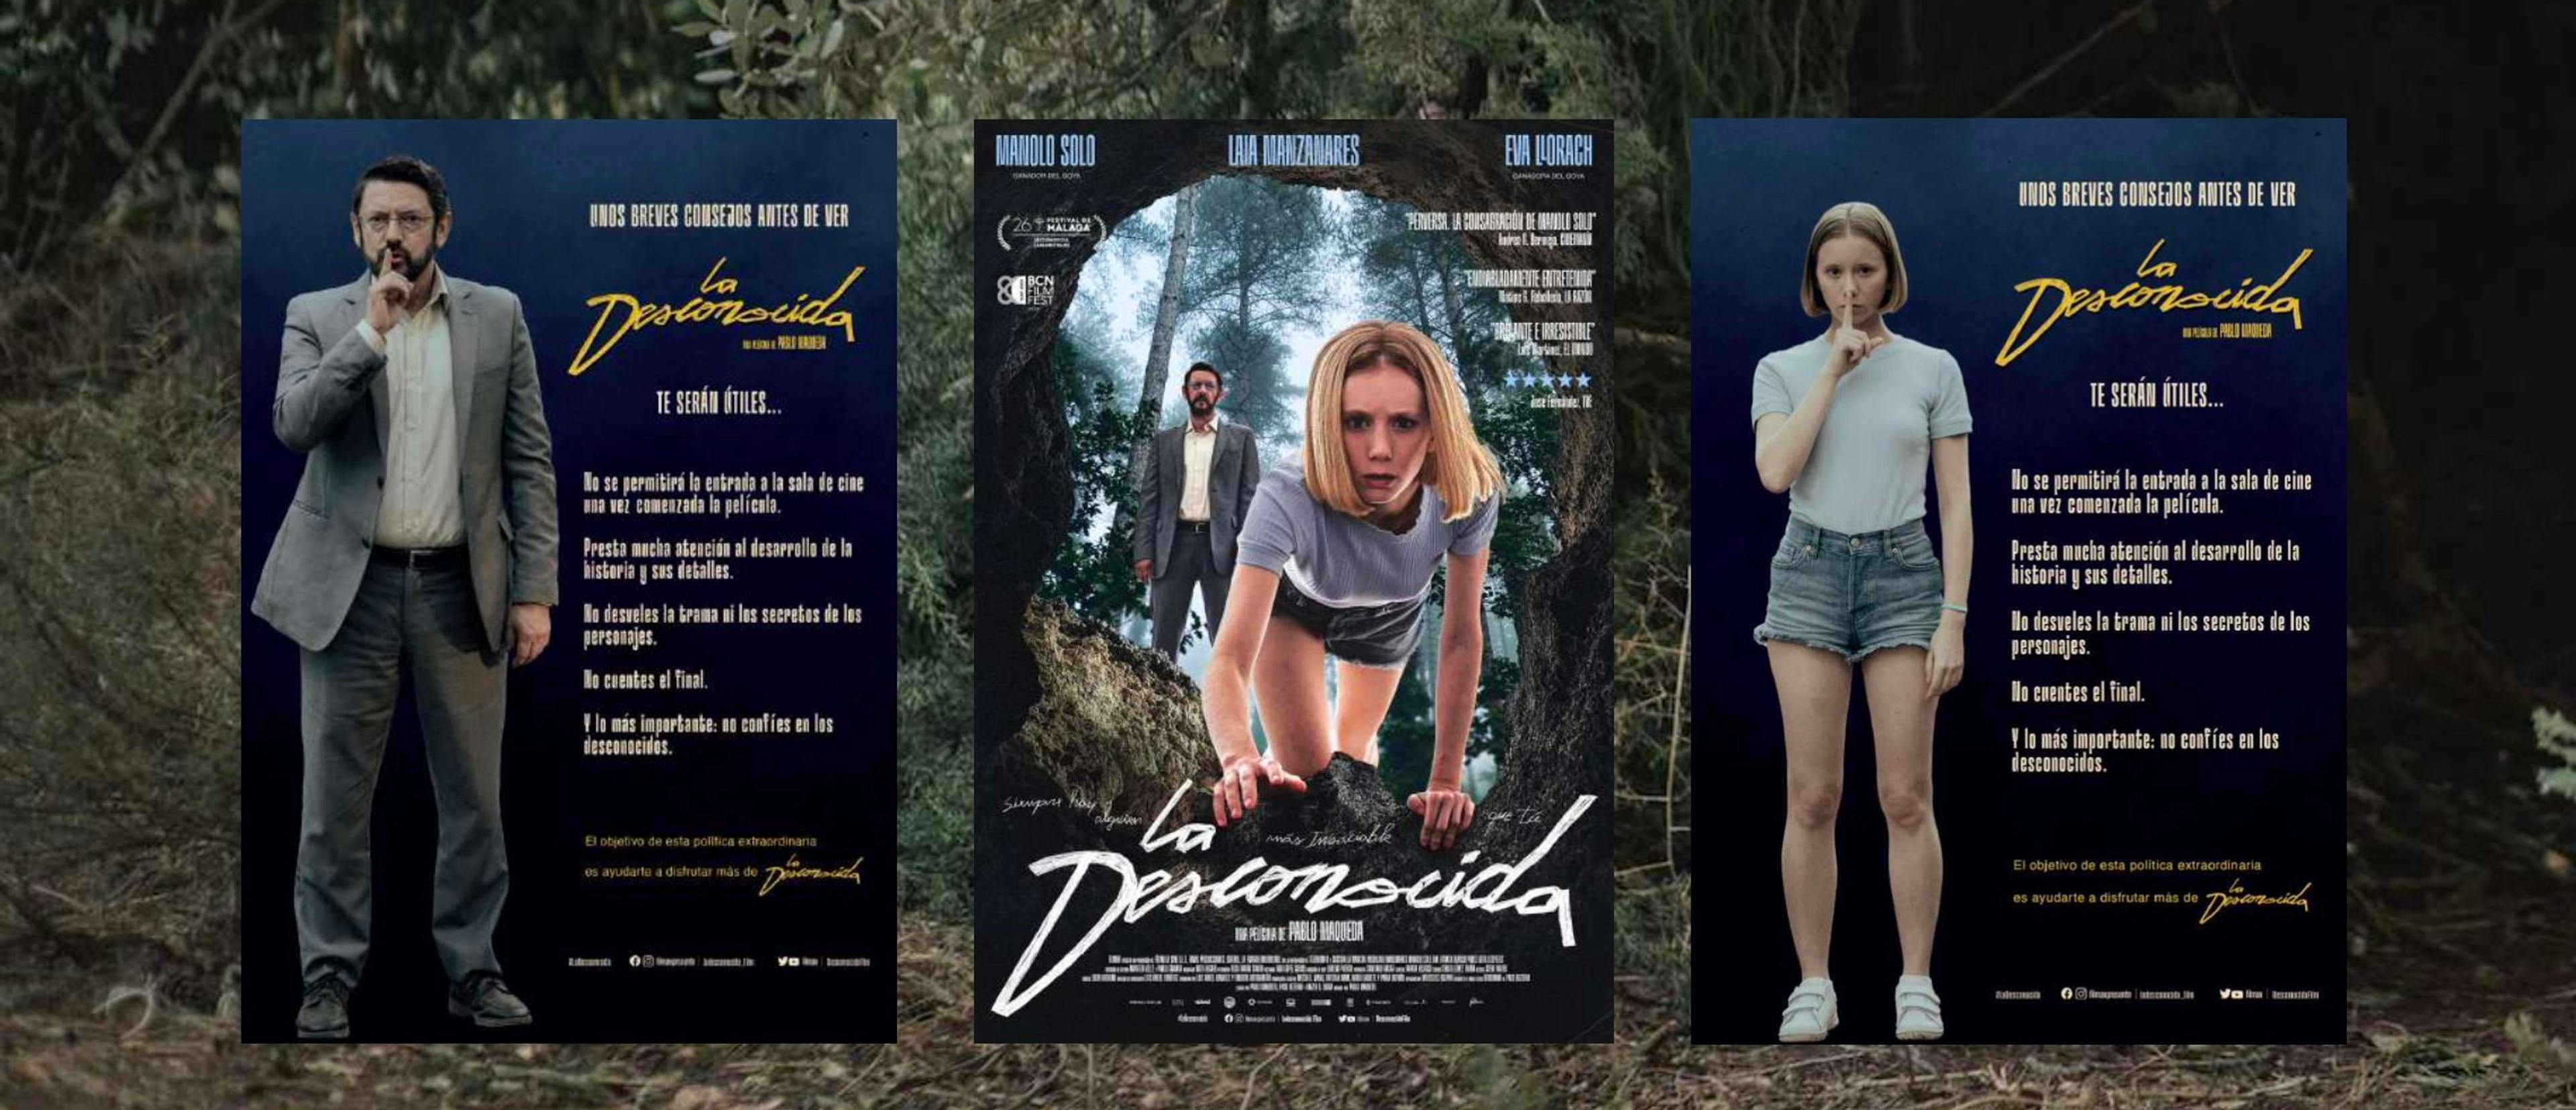 Algunos de los posters de 'La desconocida' que invitan a mantener sus secretos